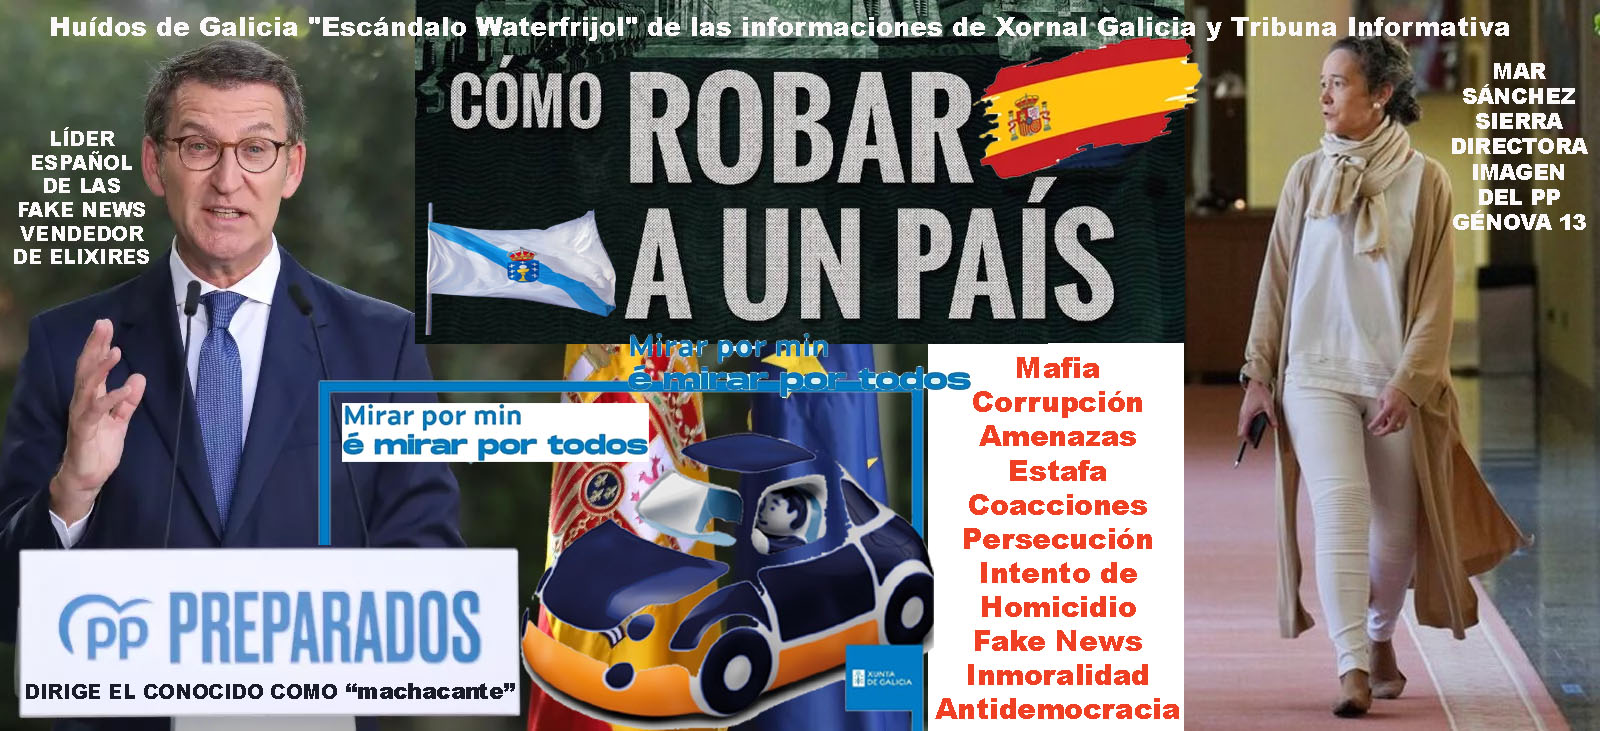 Xornal Galicia - PP Génova 13 esta viviendo el "modus operandi" de Galicia  en comunicación criminal con Mar Sánchez Sierra, coacciones, amenazas si  los medios no publican Fake News.